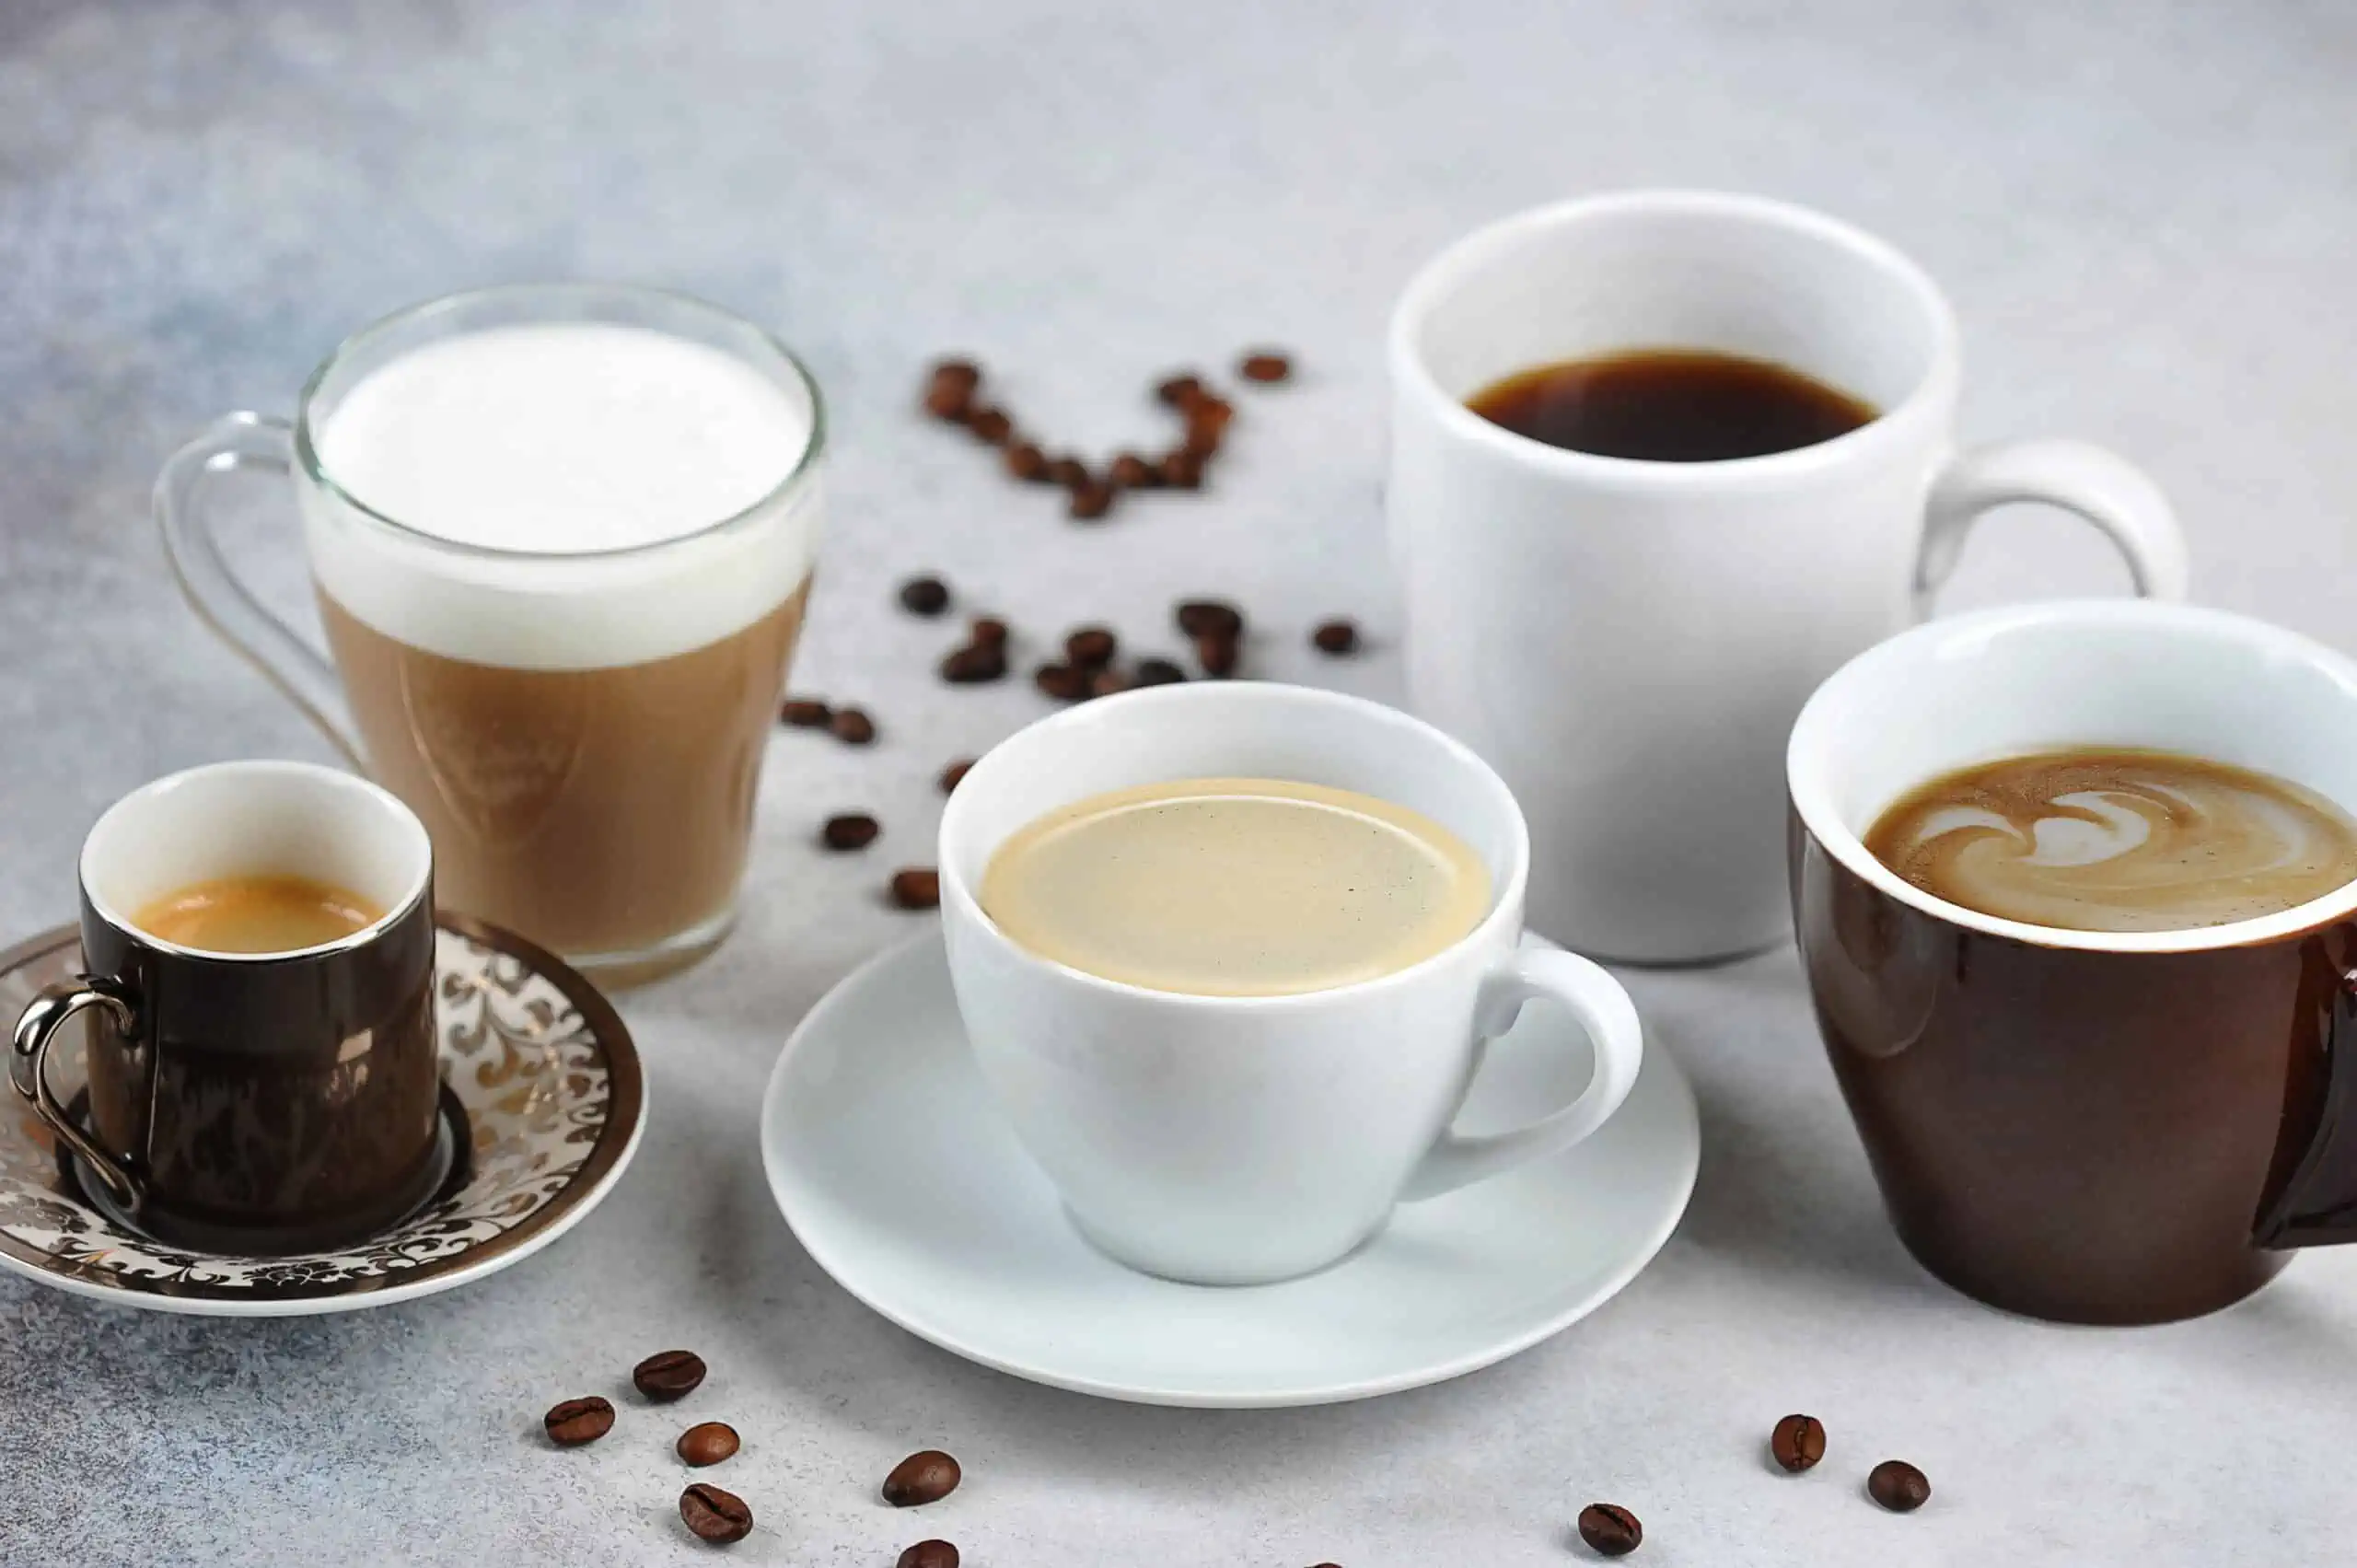 Μπορεί να προκαλέσει άγχος η κατανάλωση καφεΐνης;